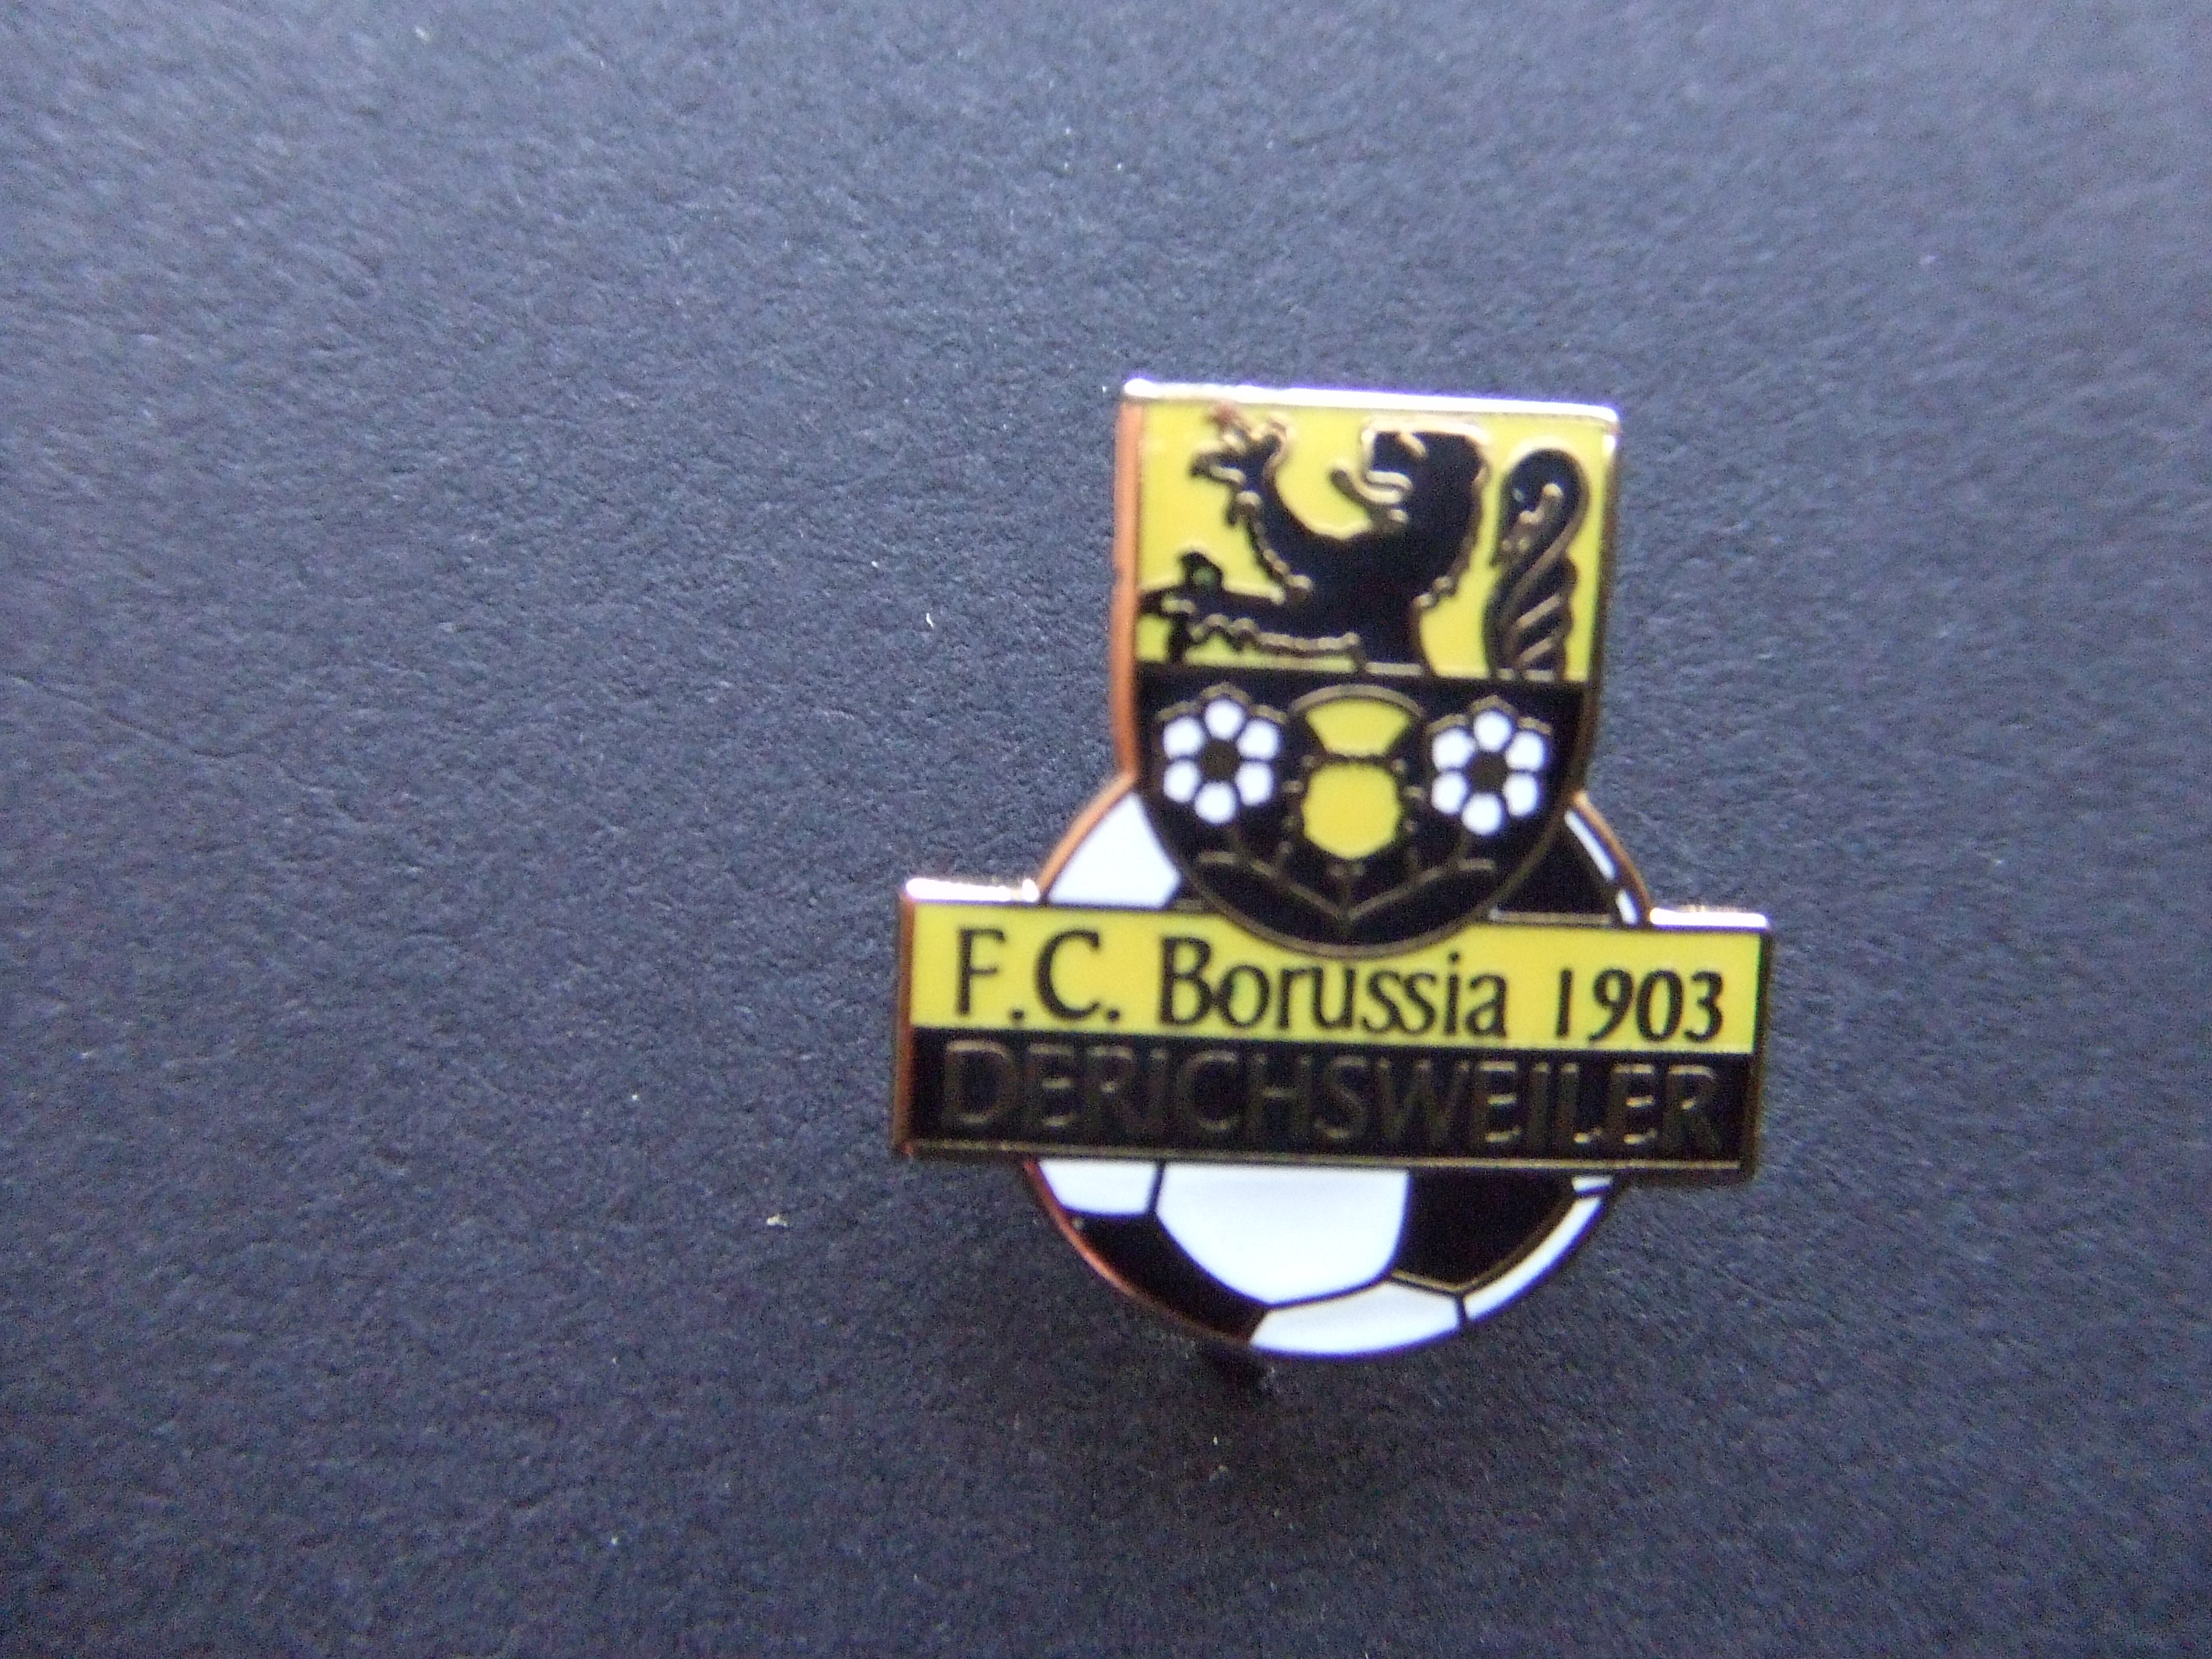 FC Borussia1903 Derichsweiler voetbal